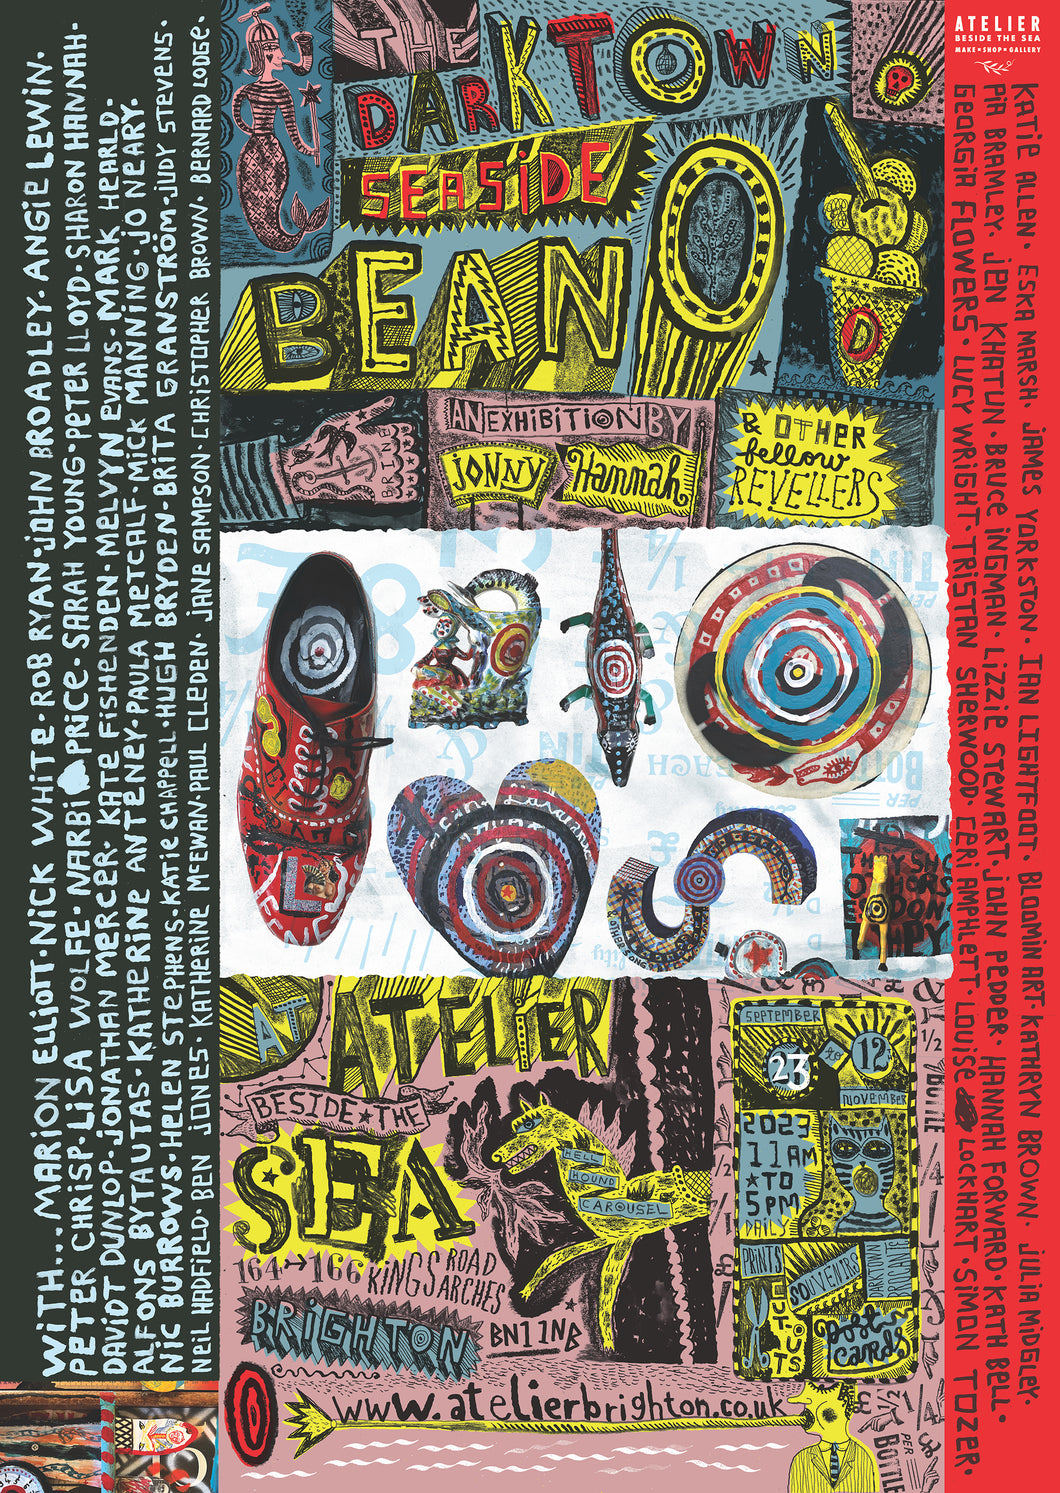 The Darktown Seaside Beano Exhibition Poster